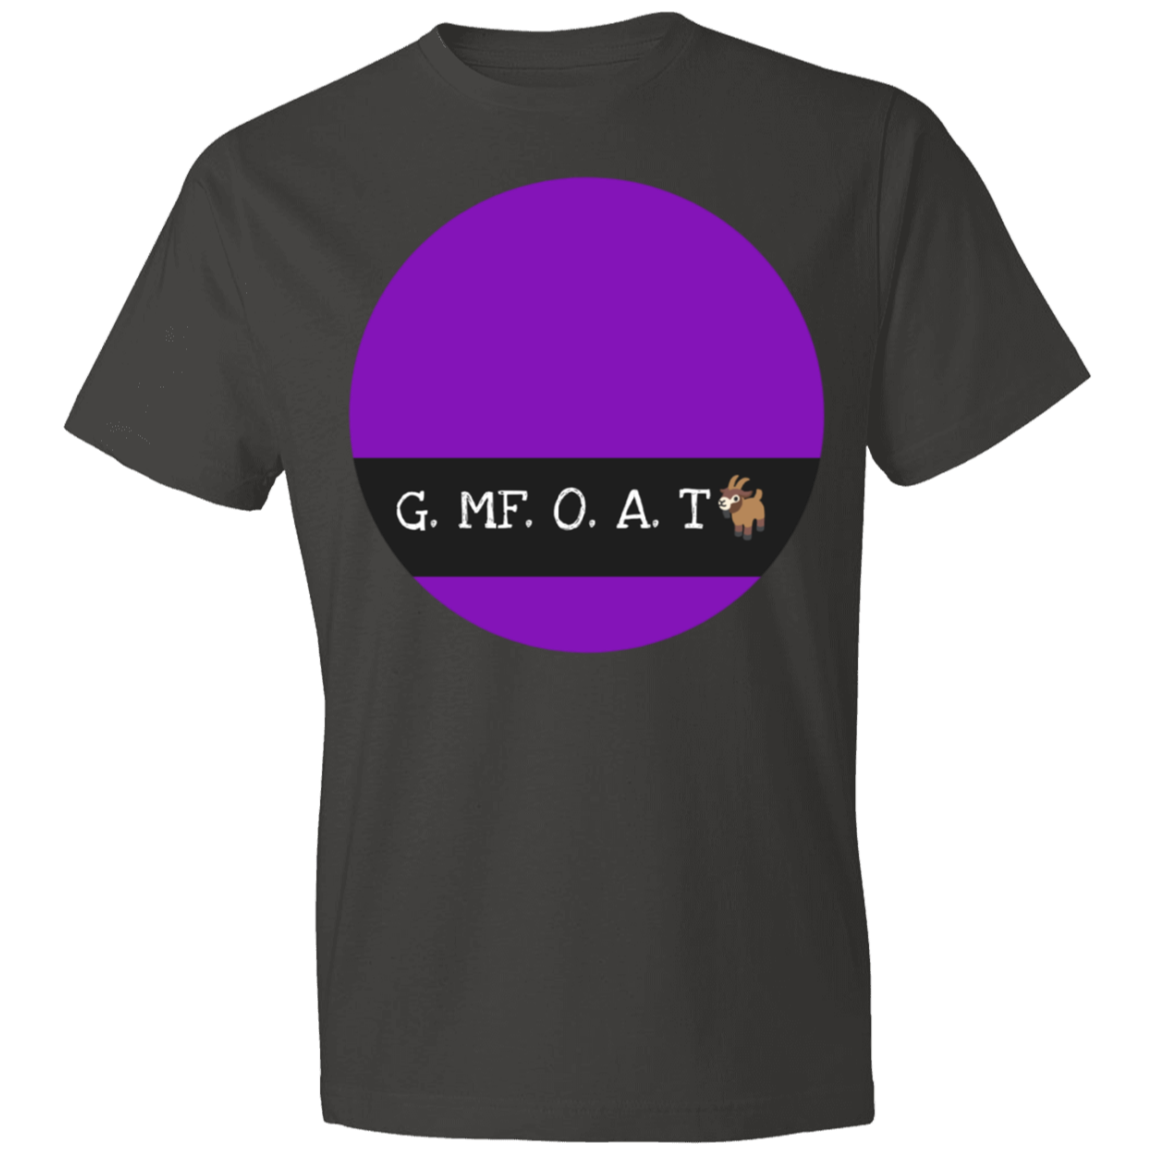 G. MF. O. A. T - Lightweight T-Shirt 4.5 oz CustomCat